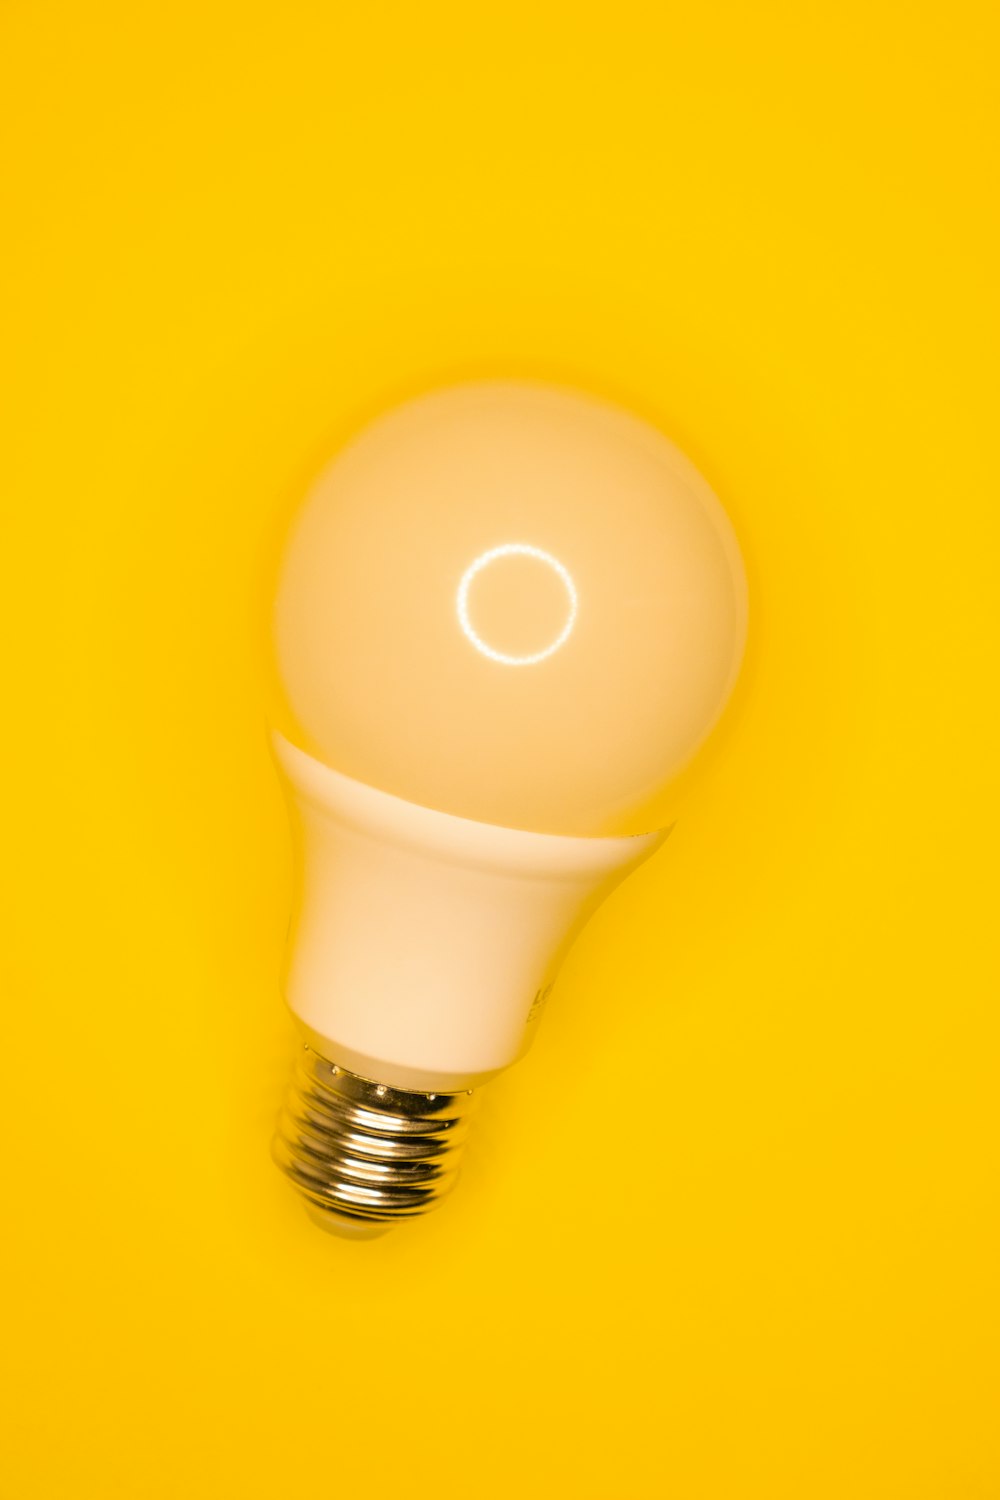 Ampoule blanche sur surface jaune